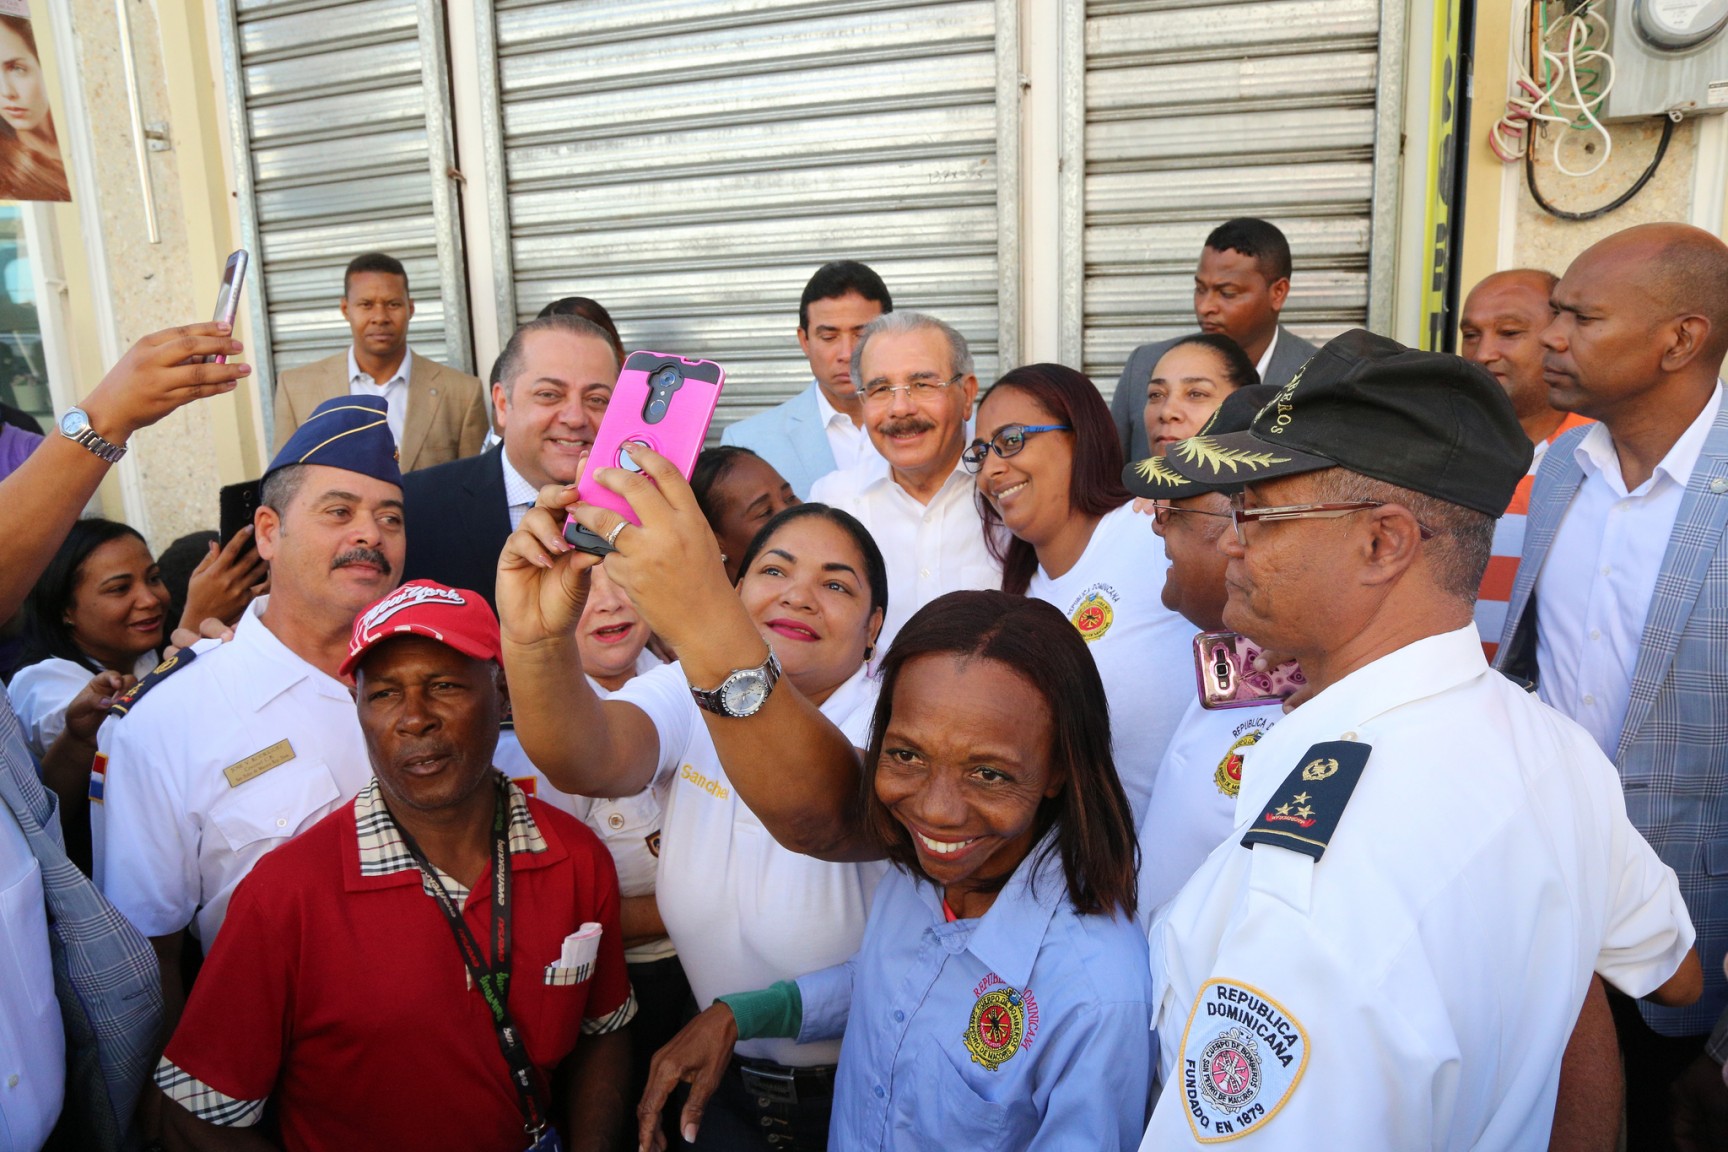 REPÚBLICA DOMINICANA: Danilo Medina realiza amplio recorrido por San Pedro de Macorís; evalúa oportunidades de desarrollo para la provincia y su gente